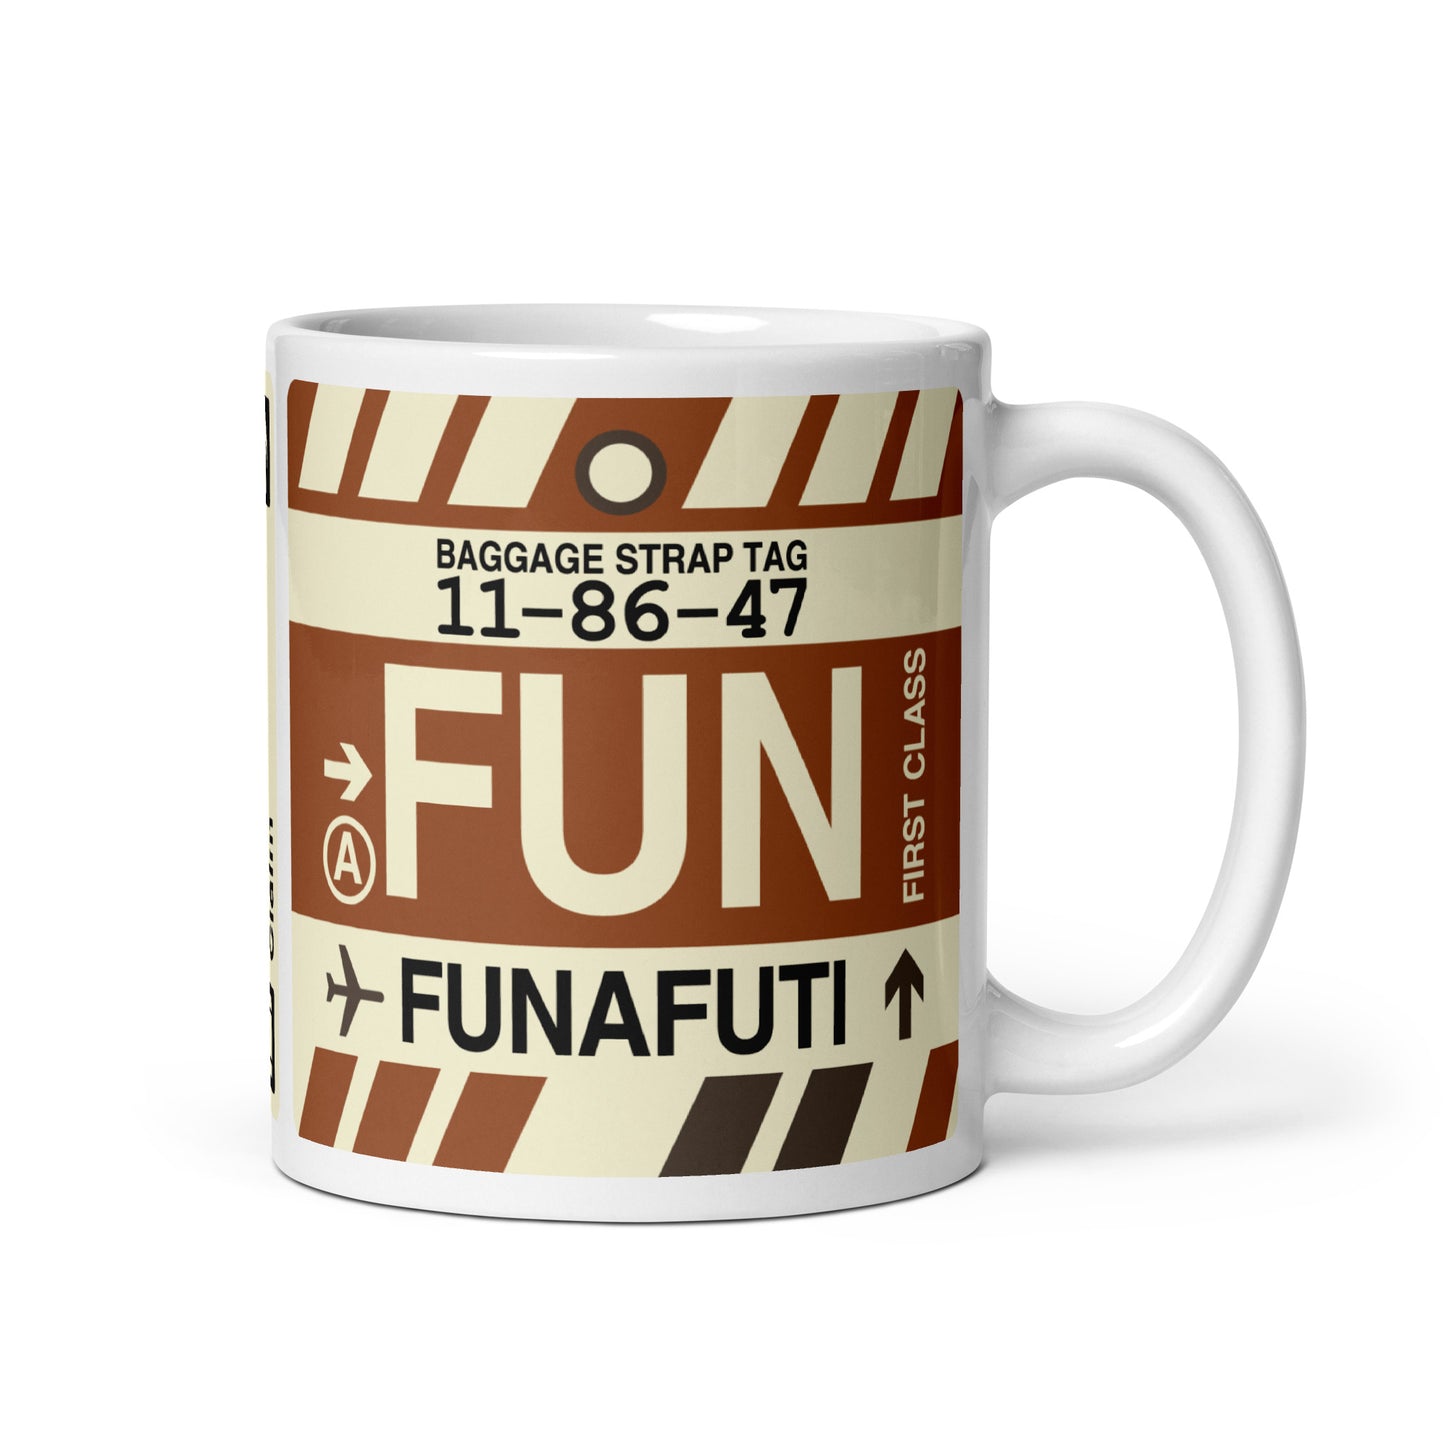 Travel-Themed Coffee Mug • FUN Funafuti • YHM Designs - Image 01